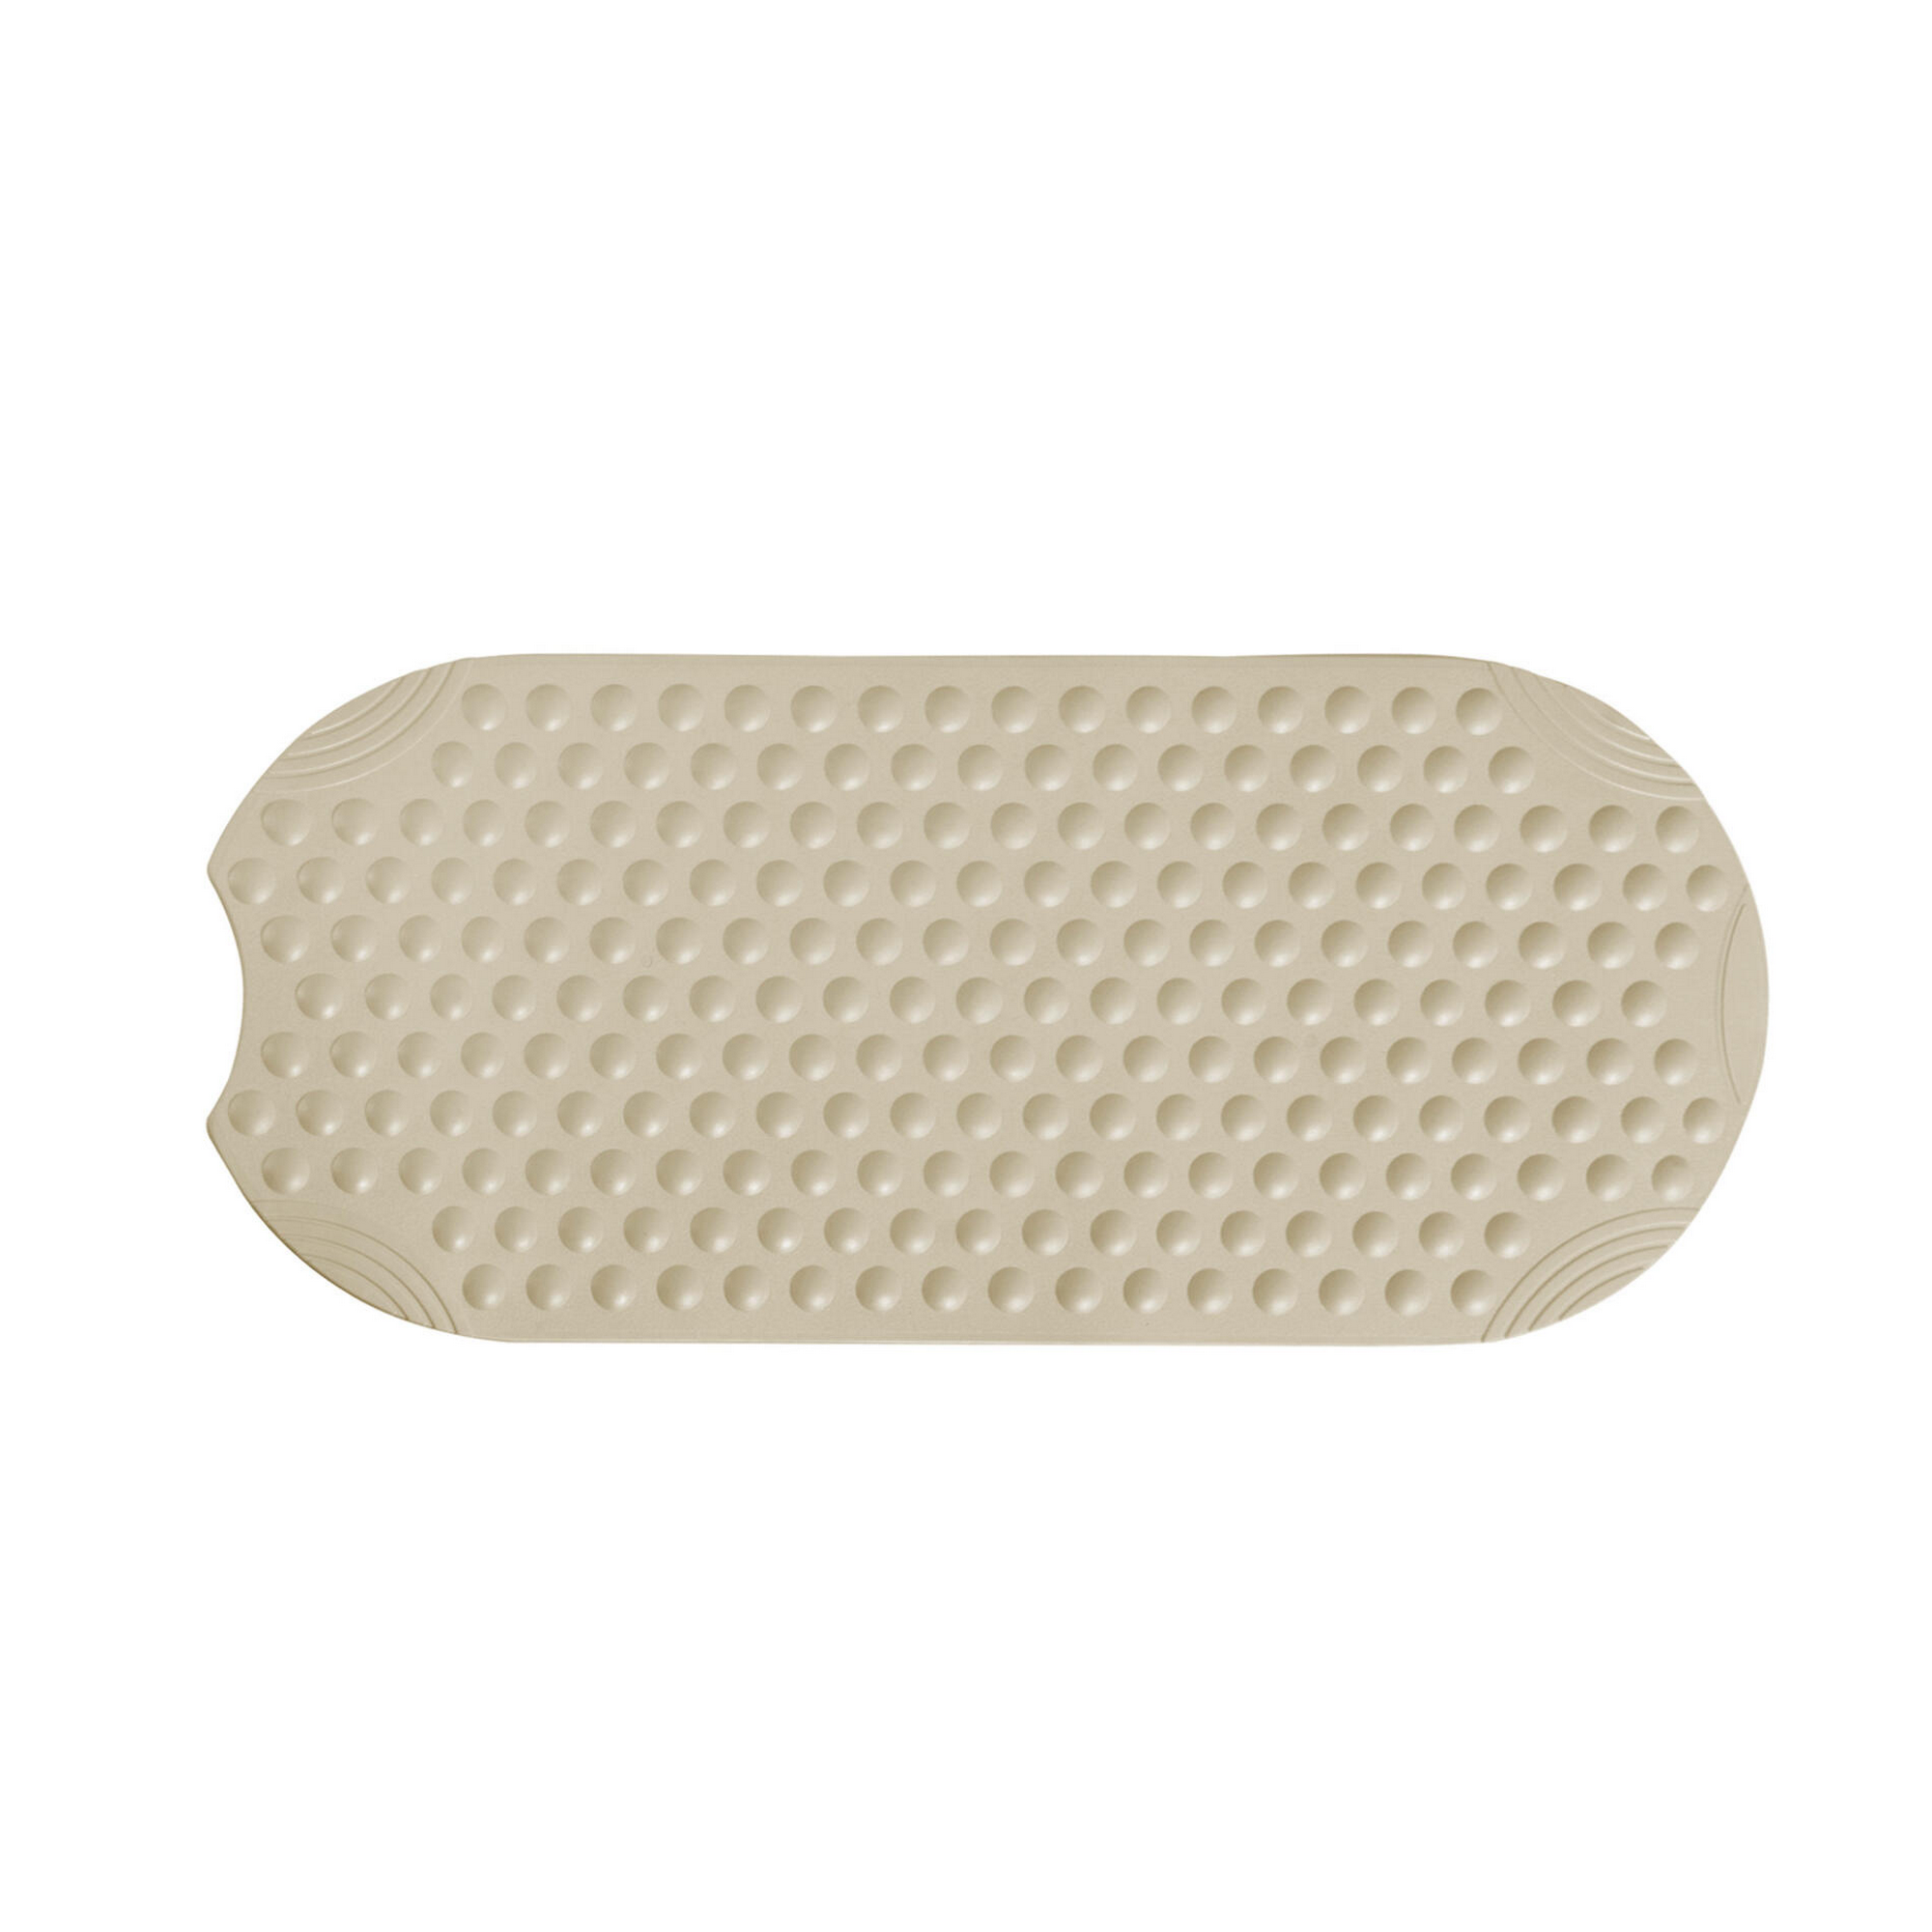 Badewanneneinlage 'TecnoPlus' beige 38 x 89 cm + product picture